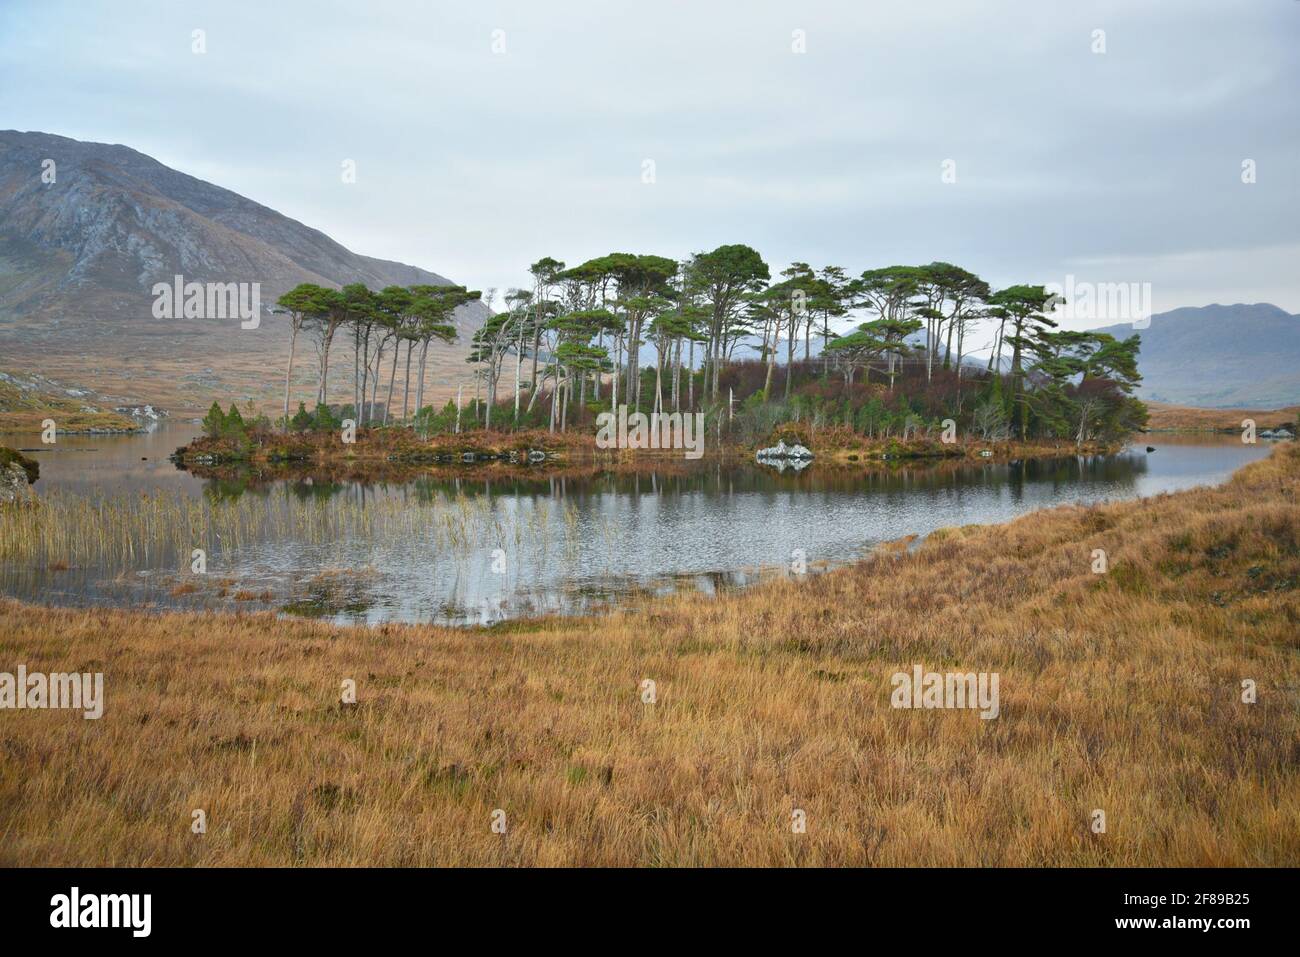 Paysage avec vue panoramique sur Pine Island avec les célèbres pins à feuilles persistantes indigènes dans la campagne du Connemara, comté de Galway Irlande. Banque D'Images